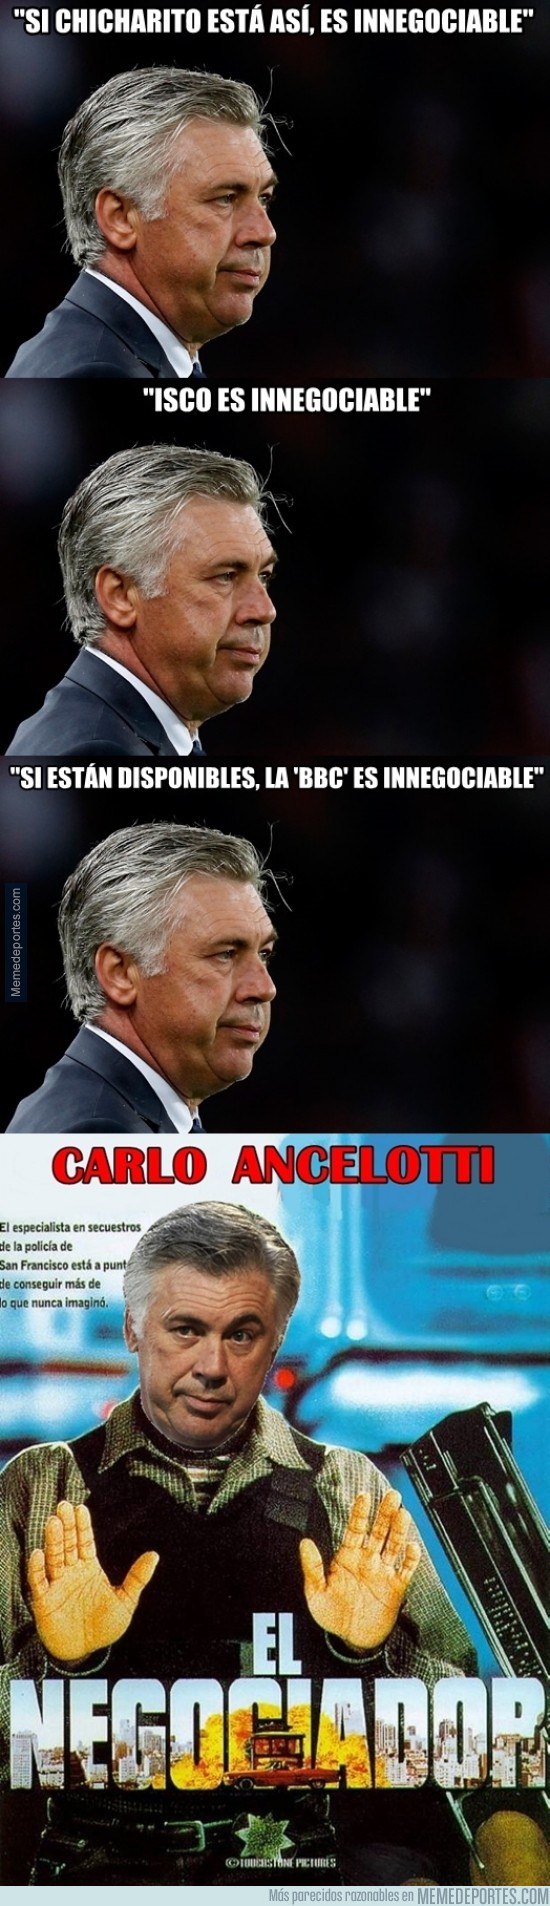 524488 - Ancelotti, imposible negociar con él